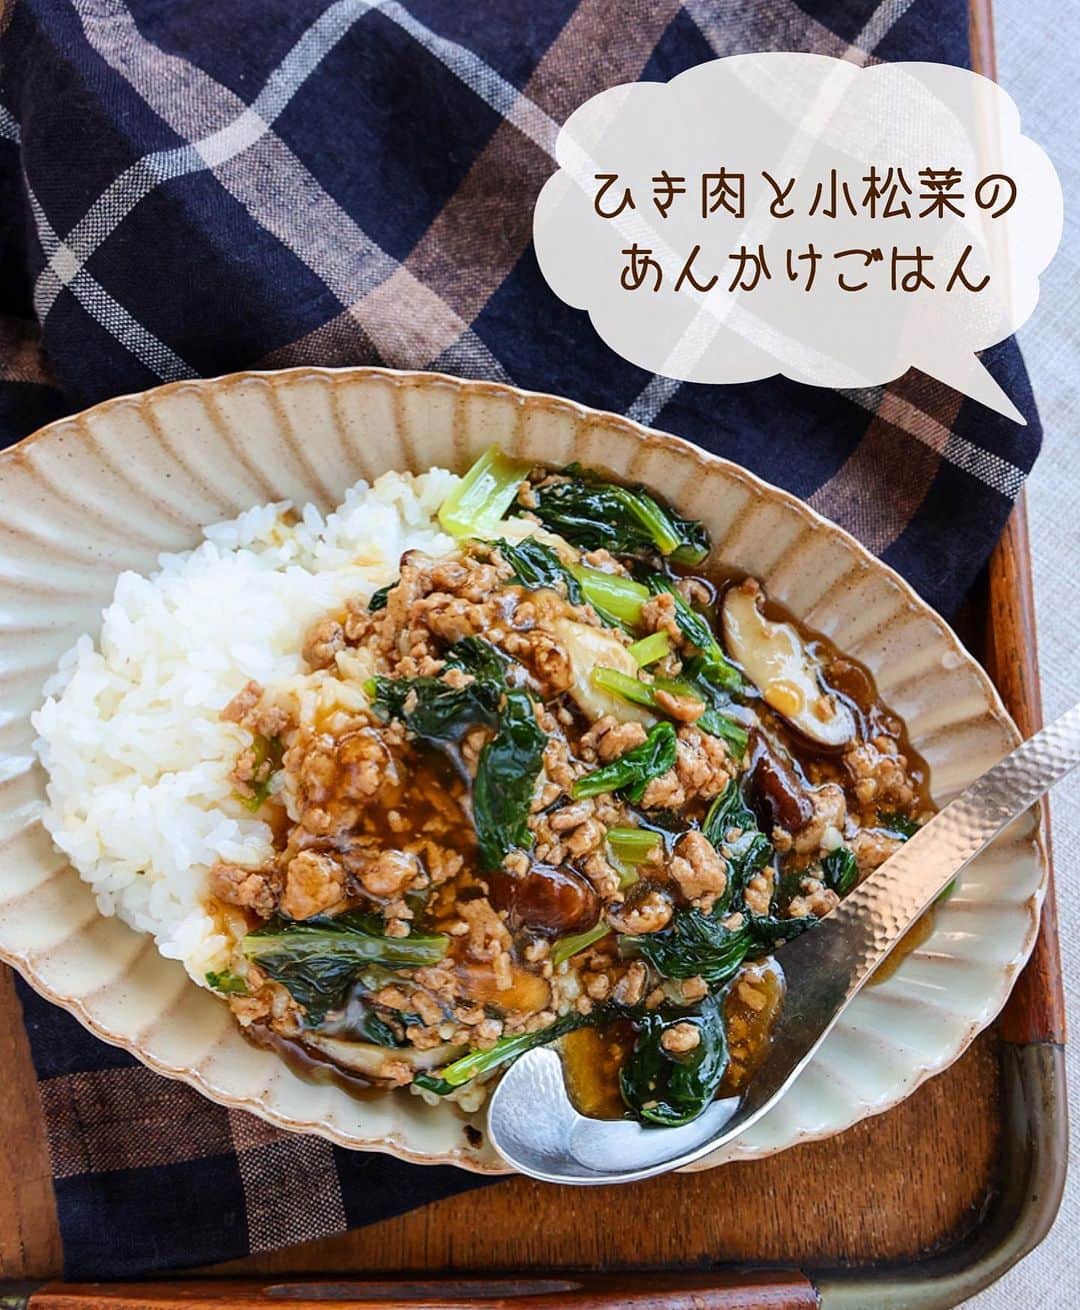 Mizuki【料理ブロガー・簡単レシピ】さんのインスタグラム写真 - (Mizuki【料理ブロガー・簡単レシピ】Instagram)「・ 【#レシピ 】ーーーーーーーーーー ひき肉と小松菜のあんかけごはん ーーーーーーーーーーーーーーーー ⁡ ⁡ ⁡ おはようございます(*^^*) ⁡ 今日ご紹介させていただくのは ささっとできるのっけごはん♩ \ ひき肉と小松菜のあんかけごはん / ⁡ しっかり味&とろみあんで がっつりごはんがすすみます♡ 野菜はしんなりするので 無理なくたっぷり食べられますよ〜♩ ⁡ 作り方は超簡単(*´艸`) 味付けもとろみ付けも 合わせ調味料で失敗なし！ フライパンひとつで完成の 簡単・時短・節約レシピです♩ ⁡ あっという間にできるので よかったらお試し下さいね(*^^*) ⁡ ⁡ ⁡ ＿＿＿＿＿＿＿＿＿＿＿＿＿＿＿＿＿＿＿＿＿ 【2〜3人分】 豚ひき肉...150g 小松菜...1束(200g) (好みで)しいたけ...2枚 ごま油...小1 ●水...200ml ●醤油・みりん・片栗粉...各大1 ●オイスターソース...大1/2 ●鶏がらスープ...小1/3 ごはん...適量 ⁡ 1.小松菜は3cm長さに切る。しいたけは薄切りにする。●は合わせておく。 2.フライパンにごま油を中火で熱してひき肉を炒める。色が変わったら小松菜としいたけも加えて更に炒める。 3.野菜がしんなりしたら●を加え、混ぜながらとろみを付け、ごはんにかける。 ￣￣￣￣￣￣￣￣￣￣￣￣￣￣￣￣￣￣￣￣￣ ⁡ ⁡ ⁡ 《ポイント》 ♦︎ひき肉の代わりに豚こまや豚バラで作ってもOK♩ ♦︎しいたけの代わりに他のきのこを加えても♩ ⁡ ⁡ ⁡ ⁡ ⁡ ⁡ ⁡ ⁡ 💬💬💬 昨日はたくさんの温かいお声を 本当にありがとうございました😭💕 とってもとっても嬉しかったです(涙) ⁡ この本の制作もいよいよ終わりが見えてきて もう少しで校了を迎えます✨ 本当に長い時間をかけてきたこともあり もはやライフワーク•••と化した本作り。 嬉しいような、寂しいような不思議な気持ちです✨ ⁡ 皆さんに支えられ、そして励まされ 色んなことを教えてもらった8年を ぎゅぎゅっと込めて仕上げたいと思います☺️ 本当にありがとうございました😭💓 ⁡ ⁡ ⁡ ⁡ ⁡ ⁡ ⁡ \ 新刊予約開始しました /(9月24日発売) ⁡ 🔹🔹🔹🔹🔹🔹🔹🔹🔹🔹🔹🔹 今日のごはんこれに決まり！ #Mizukiのレシピノート 決定版 500品 🔹🔹🔹🔹🔹🔹🔹🔹🔹🔹🔹🔹 ⁡ 総レシピ6000点の中からレシピを厳選！ まさかの【500レシピ掲載】しました⭐️ (もはや辞典...) ⁡ 肉や魚のメインおかずはもちろん 副菜、丼、麺、スープ、お菓子 ハレの日のレシピ、鍋のレシピまで 全てこの一冊で完結！！ ⁡ ⁡ 🎁新刊予約でエプロンが当たる🎁 プレゼントキャンペーン実施中 ￣￣￣￣￣￣￣￣￣￣￣￣￣￣￣￣￣￣￣￣￣ 【応募方法】 ❶1枚目に表紙画像 2枚目にAmazonで予約したことがわかる画像 (どちらもスクショでOK)を貼りつける。 ❷ハッシュタグ【#Mizukiのレシピノート 】 をつけて投稿！ ￣￣￣￣￣￣￣￣￣￣￣￣￣￣￣￣￣￣￣￣￣￣ ⁡ ⁡ ⁡ ⁡ ⁡ ＿＿＿＿＿＿＿＿＿＿＿＿＿＿＿＿ 🟥YouTube 料理動画配信中🟥 ￣￣￣￣￣￣￣￣￣￣￣￣￣￣￣￣ 料理とお菓子の簡単レシピを ご紹介しています☺️💓 ⁡ 【奇跡のキッチン】で検索🔍 (ハイライトからも飛べます✨) ￣￣￣￣￣￣￣￣￣￣￣￣￣￣￣￣ ⁡ ⁡ ⁡ ＿＿＿＿＿＿＿＿＿＿＿＿＿＿＿＿ 🔶🔶recipe book🔶🔶 ￣￣￣￣￣￣￣￣￣￣￣￣￣￣￣￣ ホケミレシピの決定版♩ \はじめてでも失敗しない/ 📙#ホットケーキミックスのお菓子 ⁡ NHKまる得マガジンテキスト☆ #ホットケーキミックス で ⁡ 📗絶品おやつ&意外なランチ ⁡ しんどくない献立、考えました♩ \𝟣𝟧分でいただきます/ 📕#Mizukiの2品献立 ⁡ 和食をもっとカジュアルに♩ \毎日のごはんがラクになる/ 📘#Mizukiの今どき和食  ＿＿＿＿＿＿＿＿＿＿＿＿＿＿＿＿＿ ⁡ ⁡ ⁡ ⁡ #ひき肉と小松菜のあんかけごはんm #丼 #小松菜 #ひき肉 #あんかけ #mizuki #簡単レシピ #時短レシピ #節約レシピ #料理 #料理初心者  #時短ごはん #節約ごはん #フーディーテーブル #おうちごはん #デリスタグラマー #おうちごはんlover #料理好きな人と繋がりたい #写真好きな人と繋がりたい #foodpick#cooking#recipe」8月29日 8時58分 - mizuki_31cafe